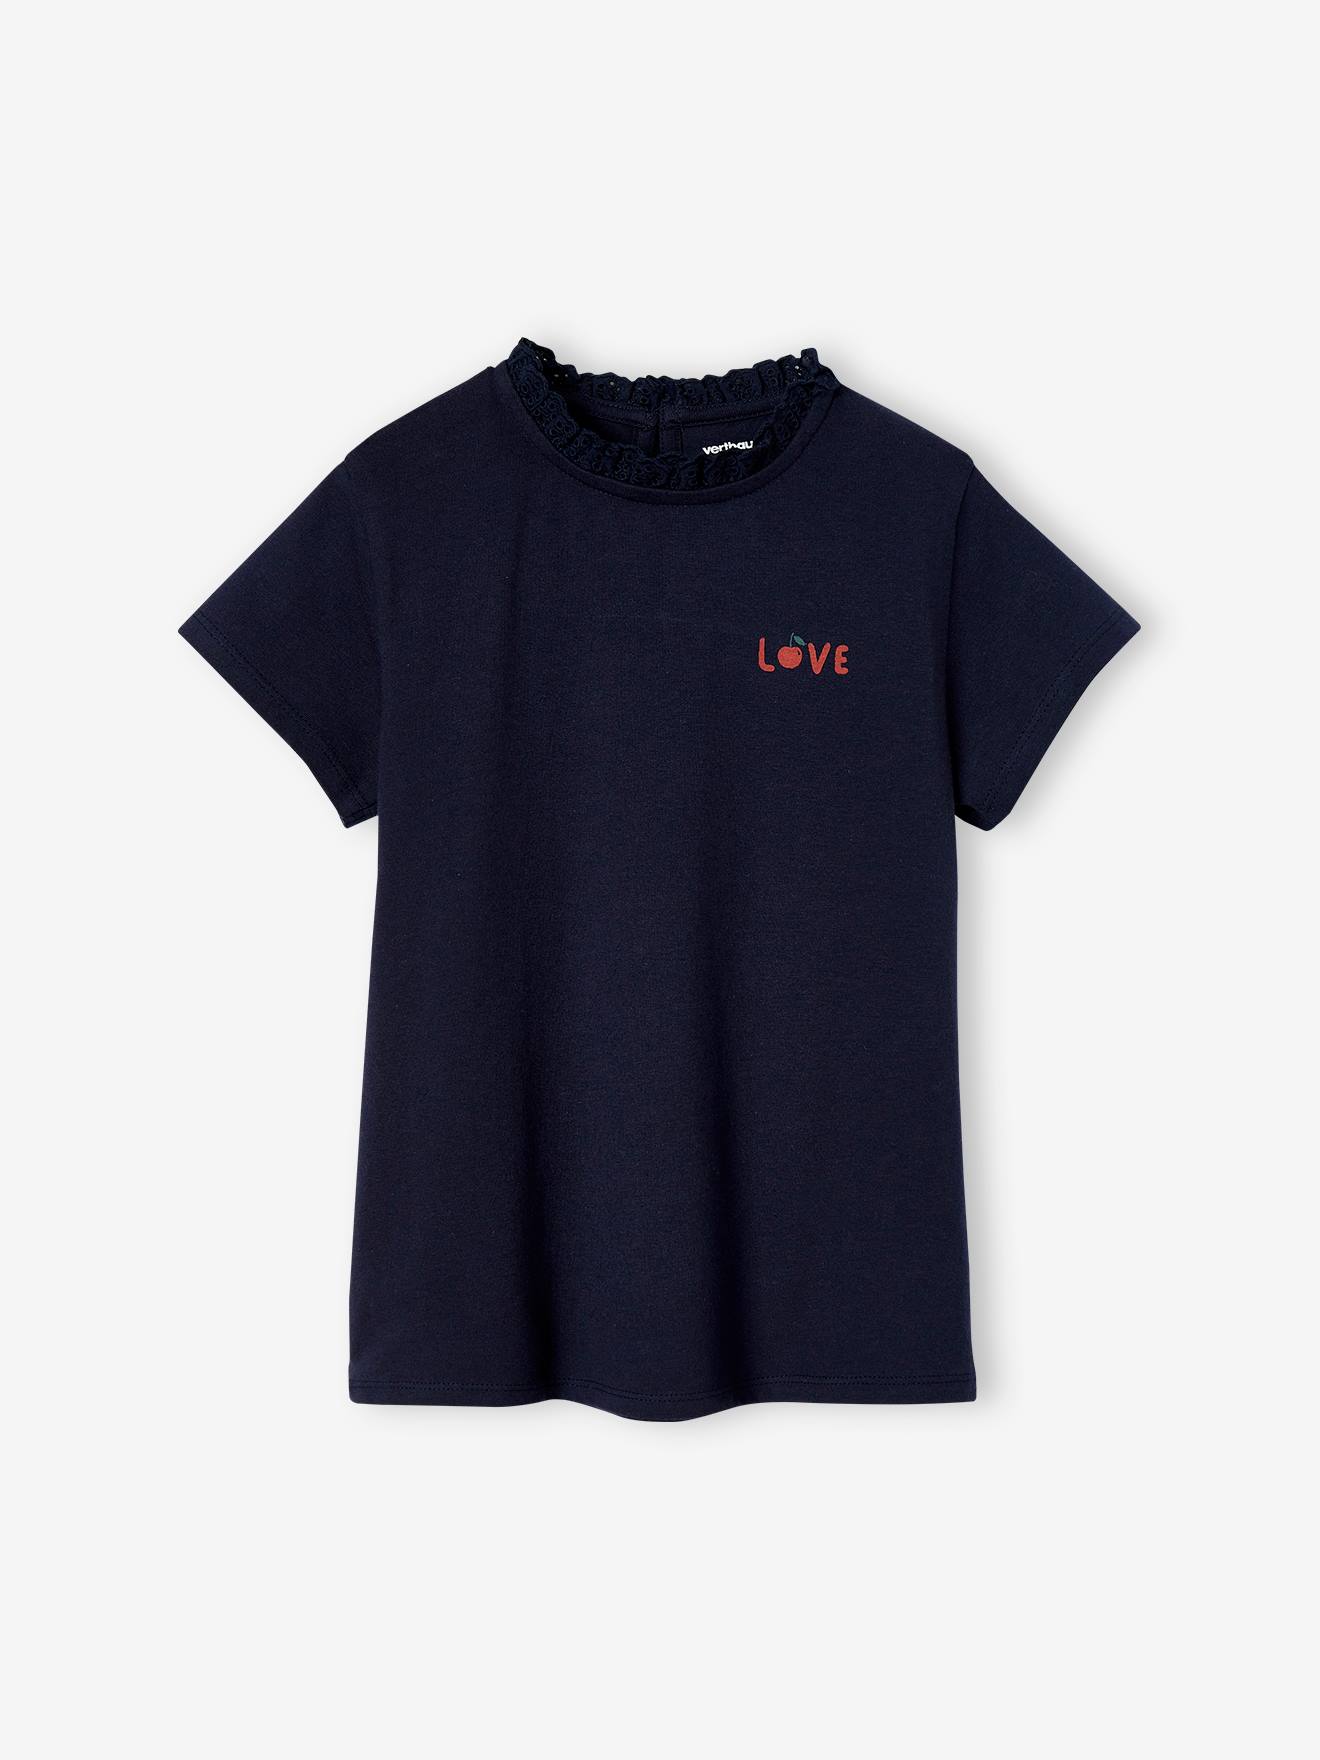 VERTBAUDET Camiseta personalizable, de manga corta con cuello para niña azul marino